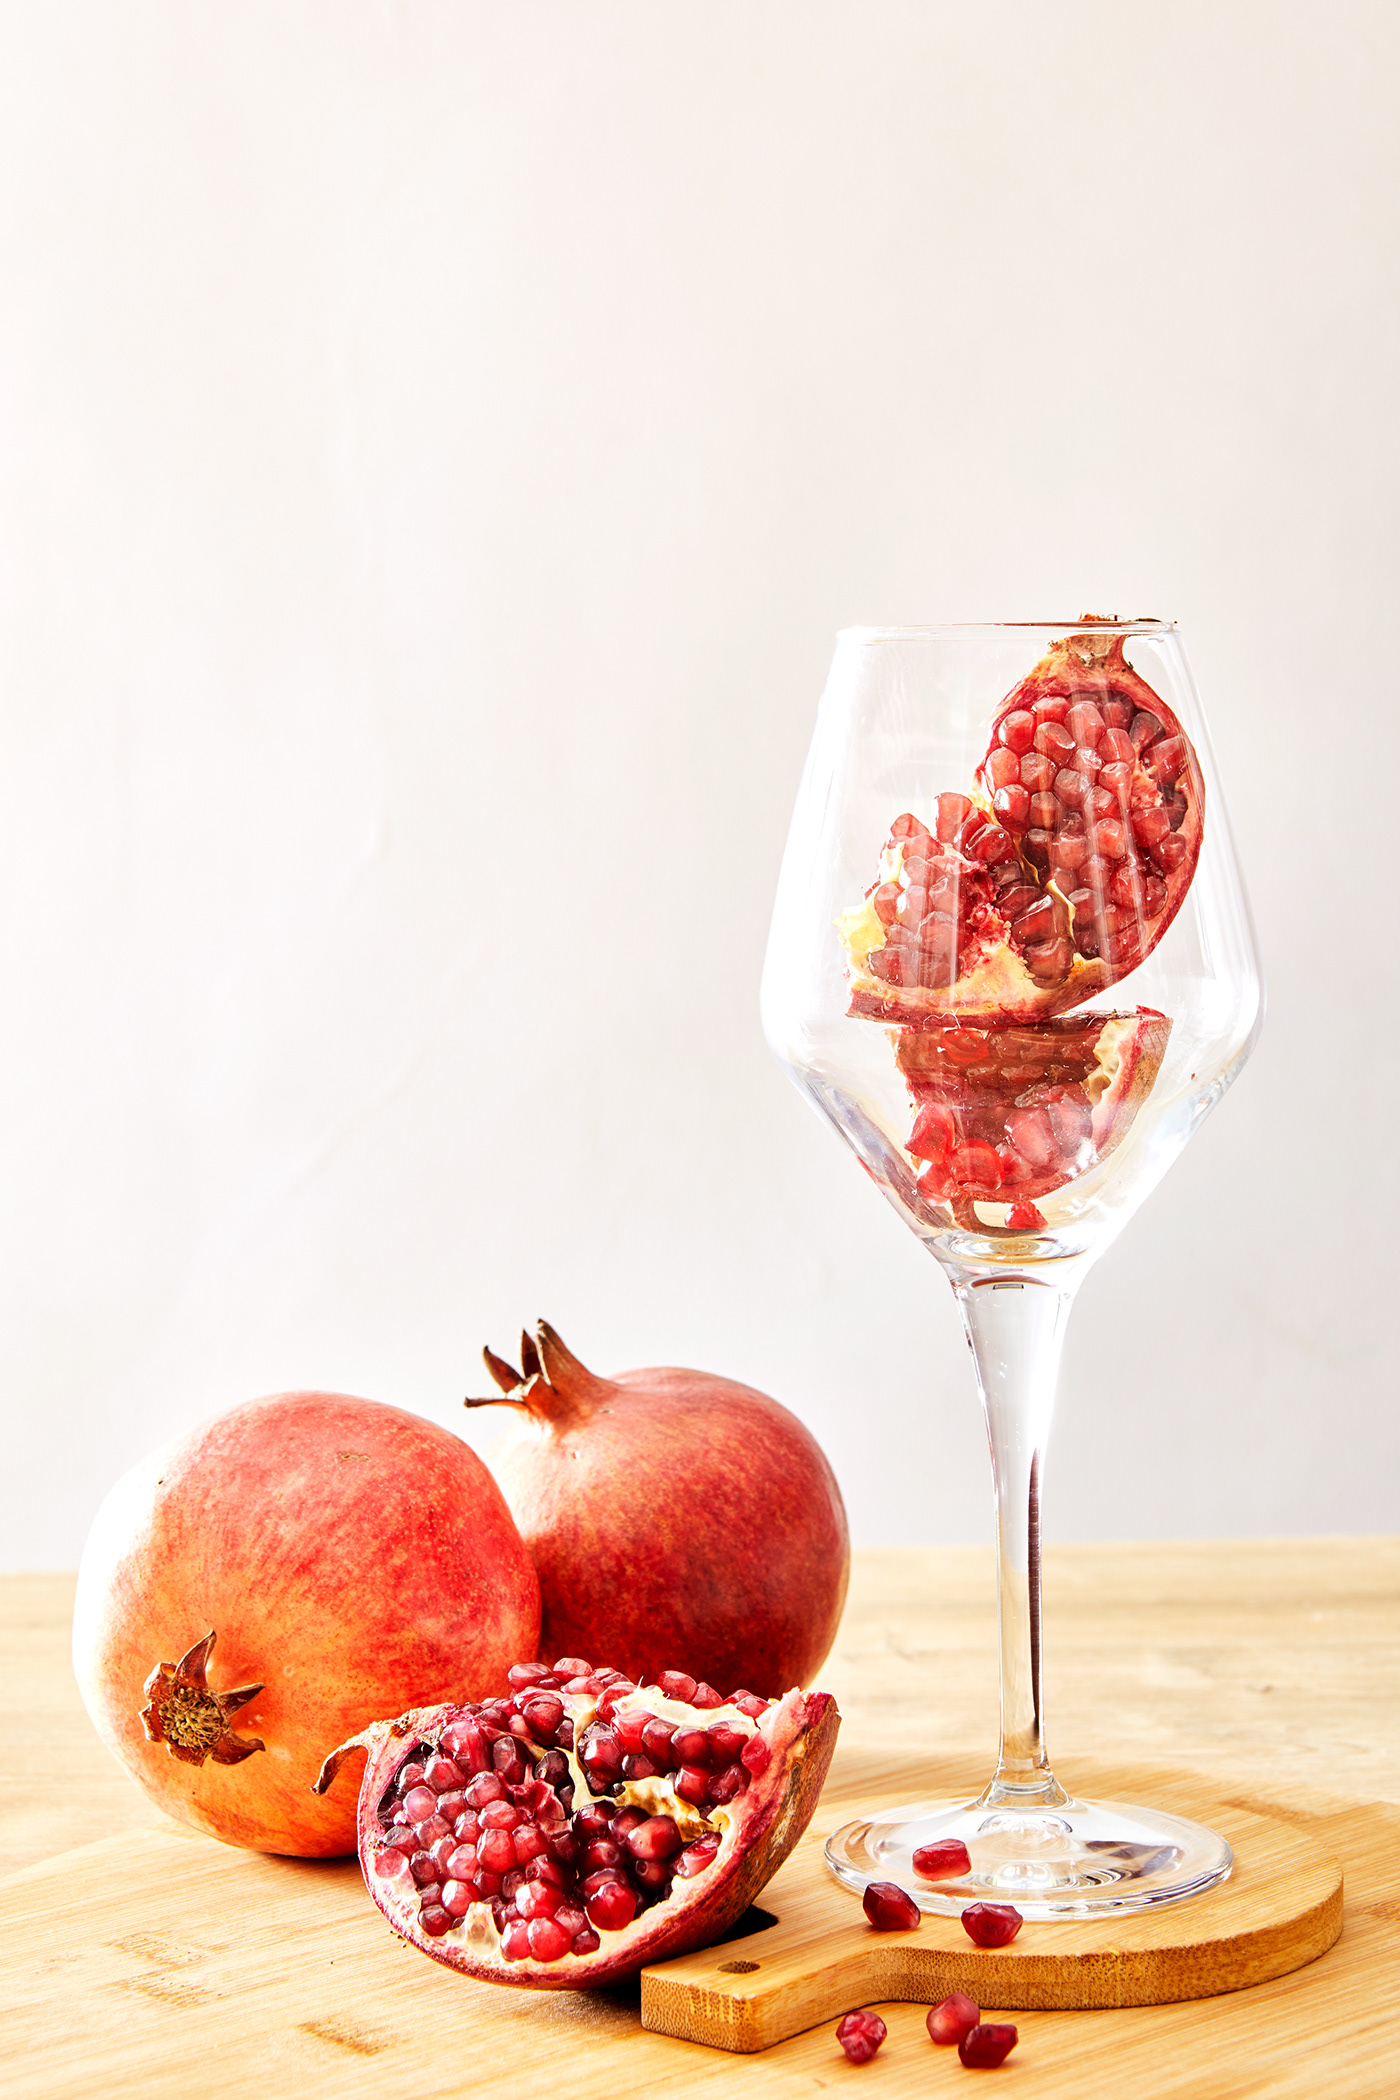 içki kutman Product Photography şarap şişe ürün fotoğrafı vineyard wine